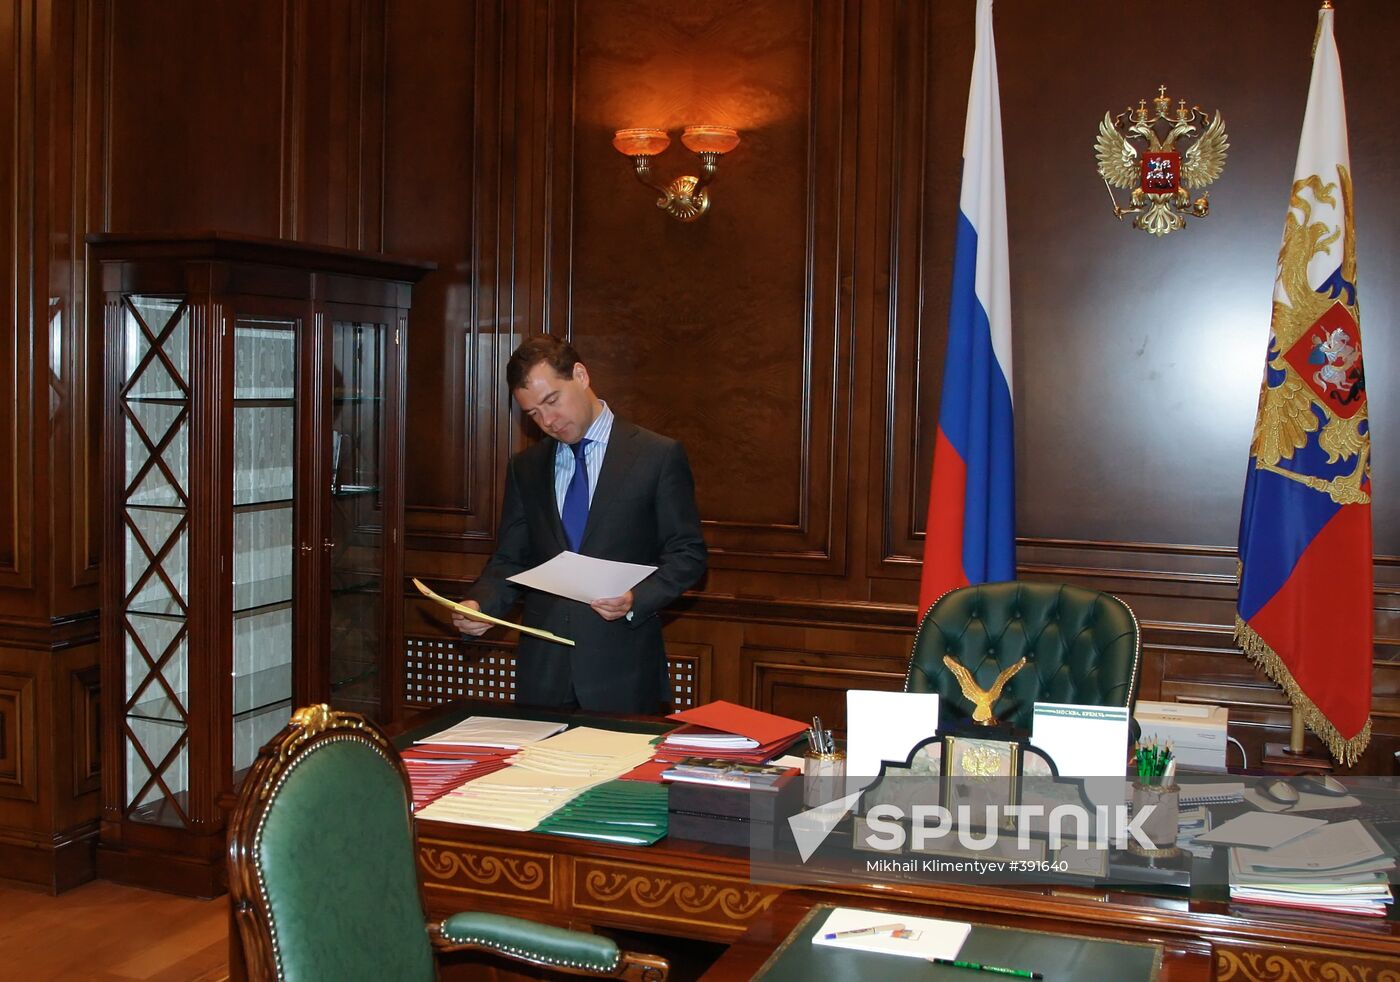 Dmitry Medvedev held a number of meetings on May 6, 2009